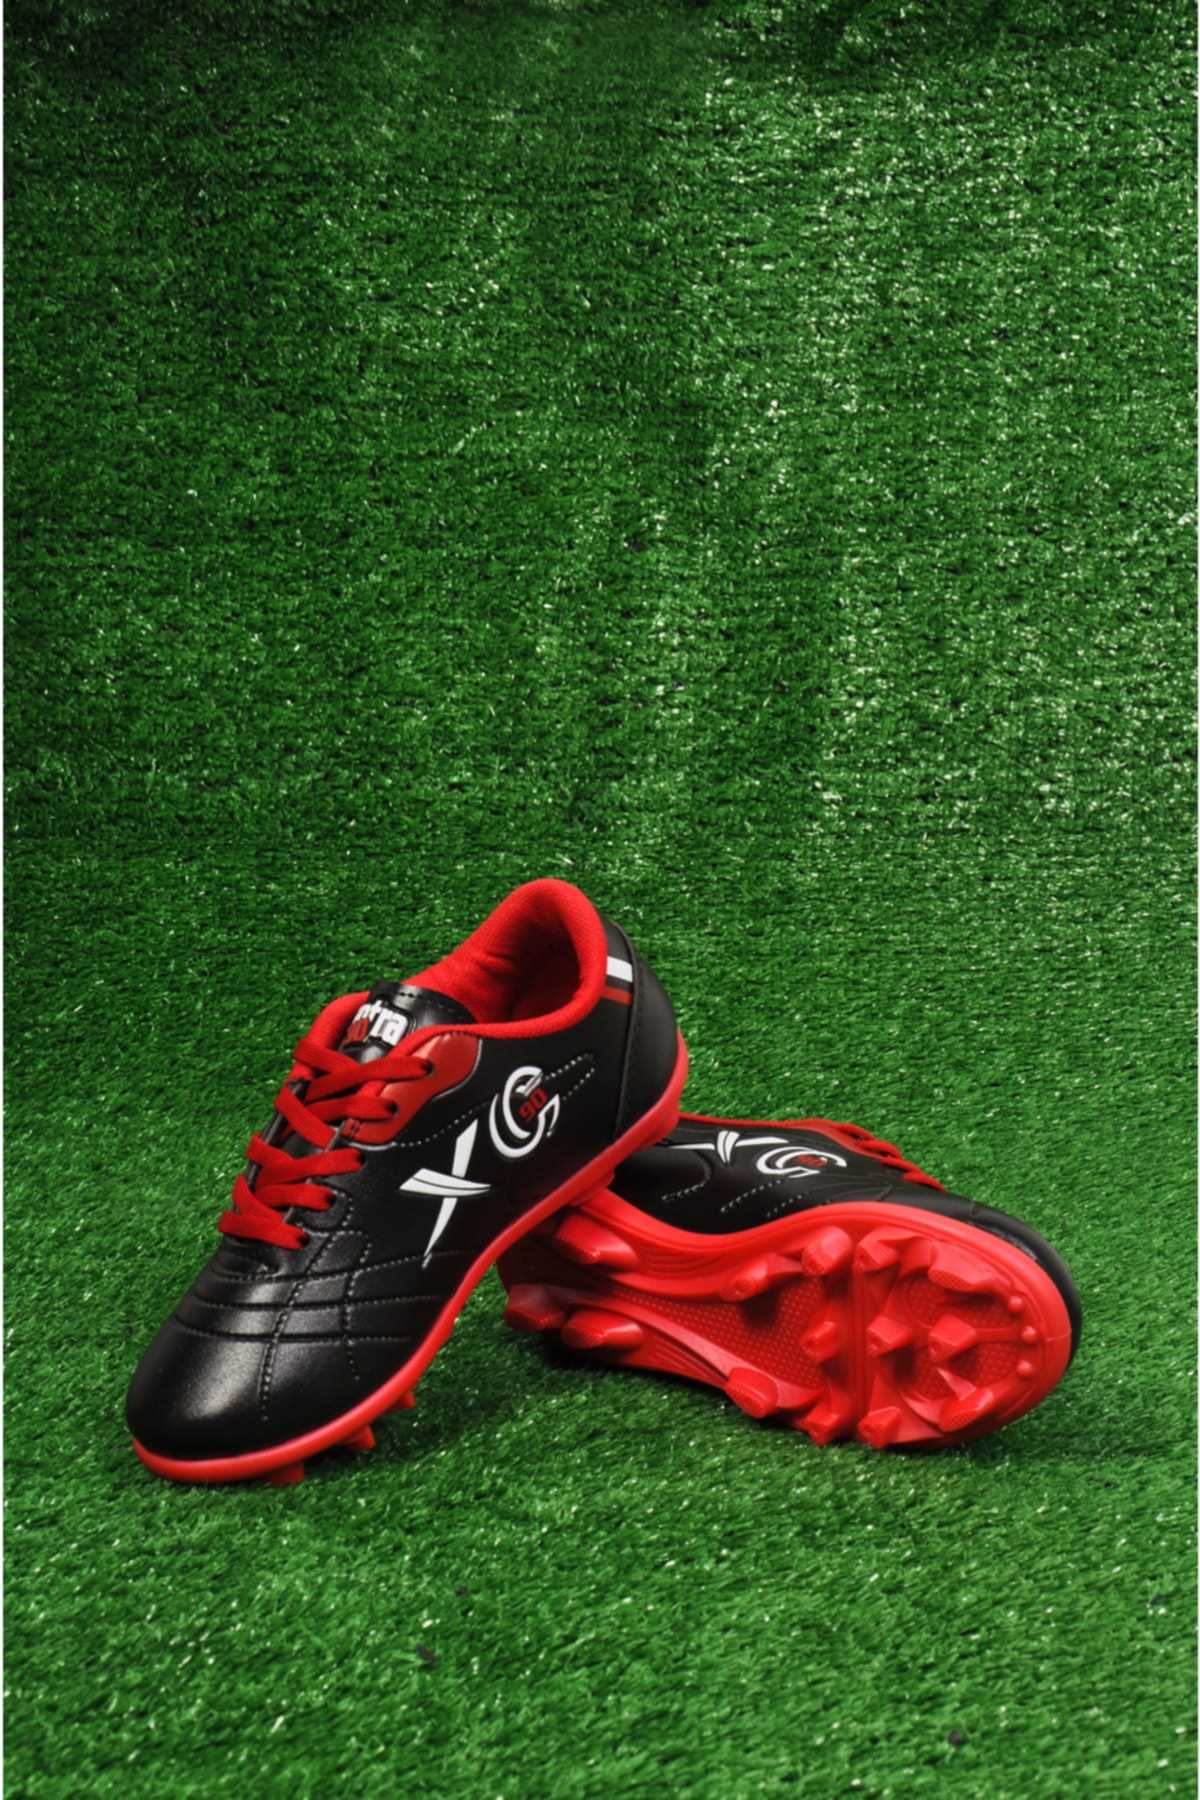 خرید کفش فوتبال دخترانه فانتزی شیک kabkabi رنگ قرمز ty255196816